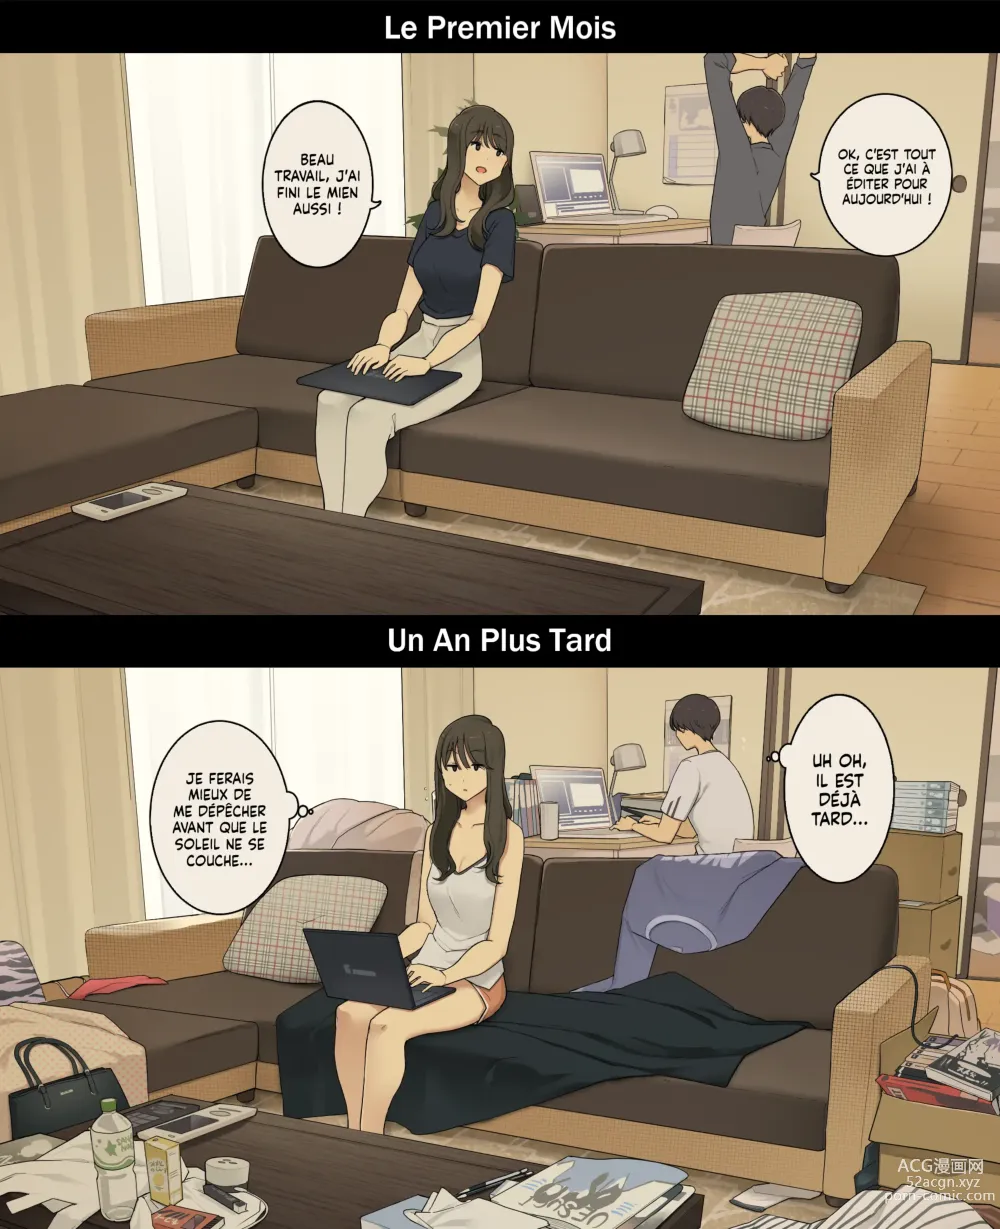 Page 12 of doujinshi Une journée dans la vie d'un couple : Premier mois vs un an plus tard